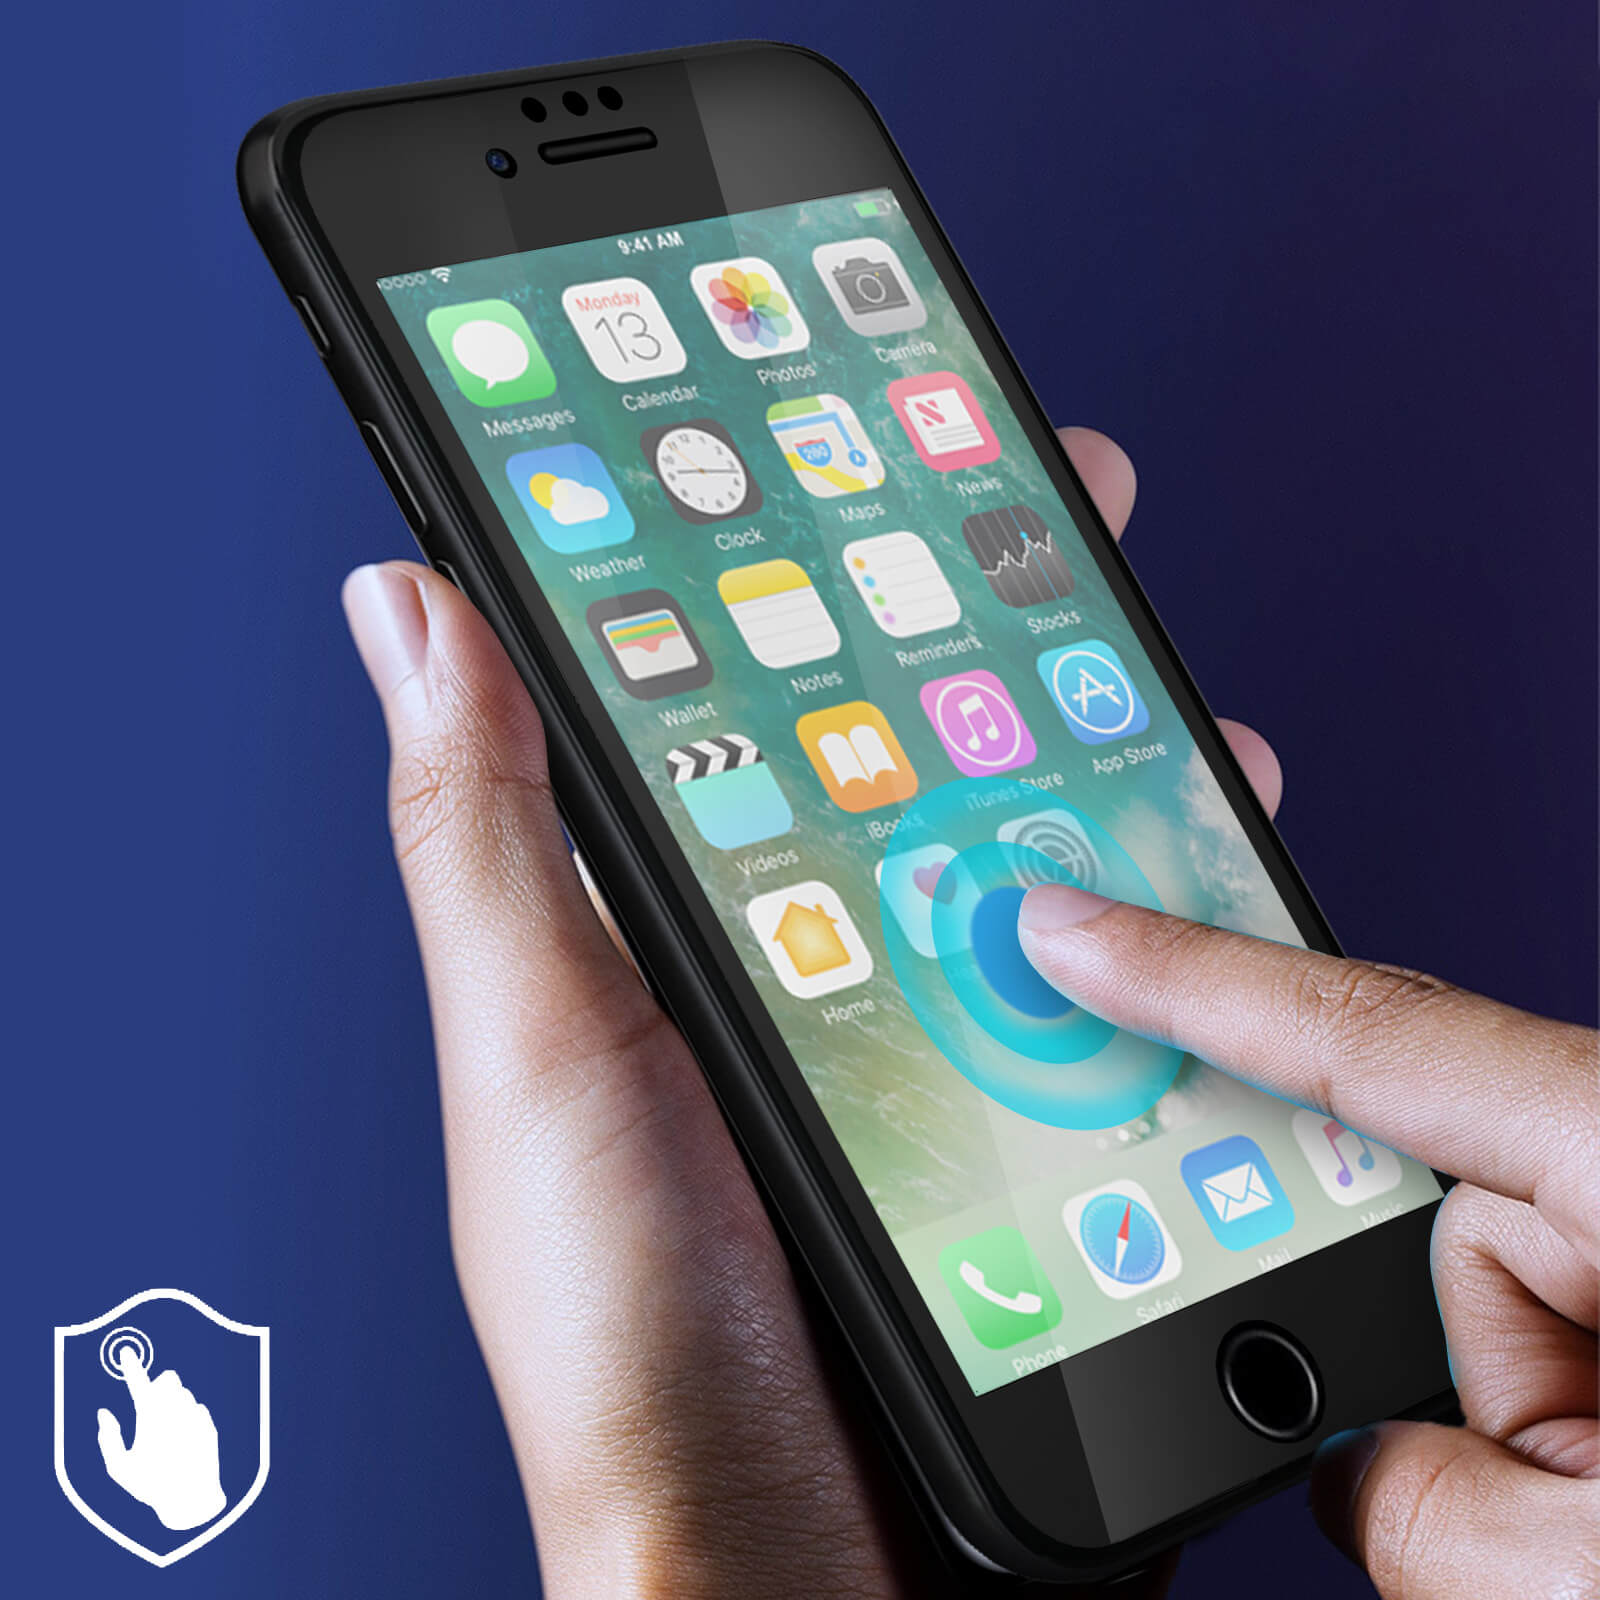 Protège Ecran Muvit en verre trempé ultra résistant pour iPhone 7